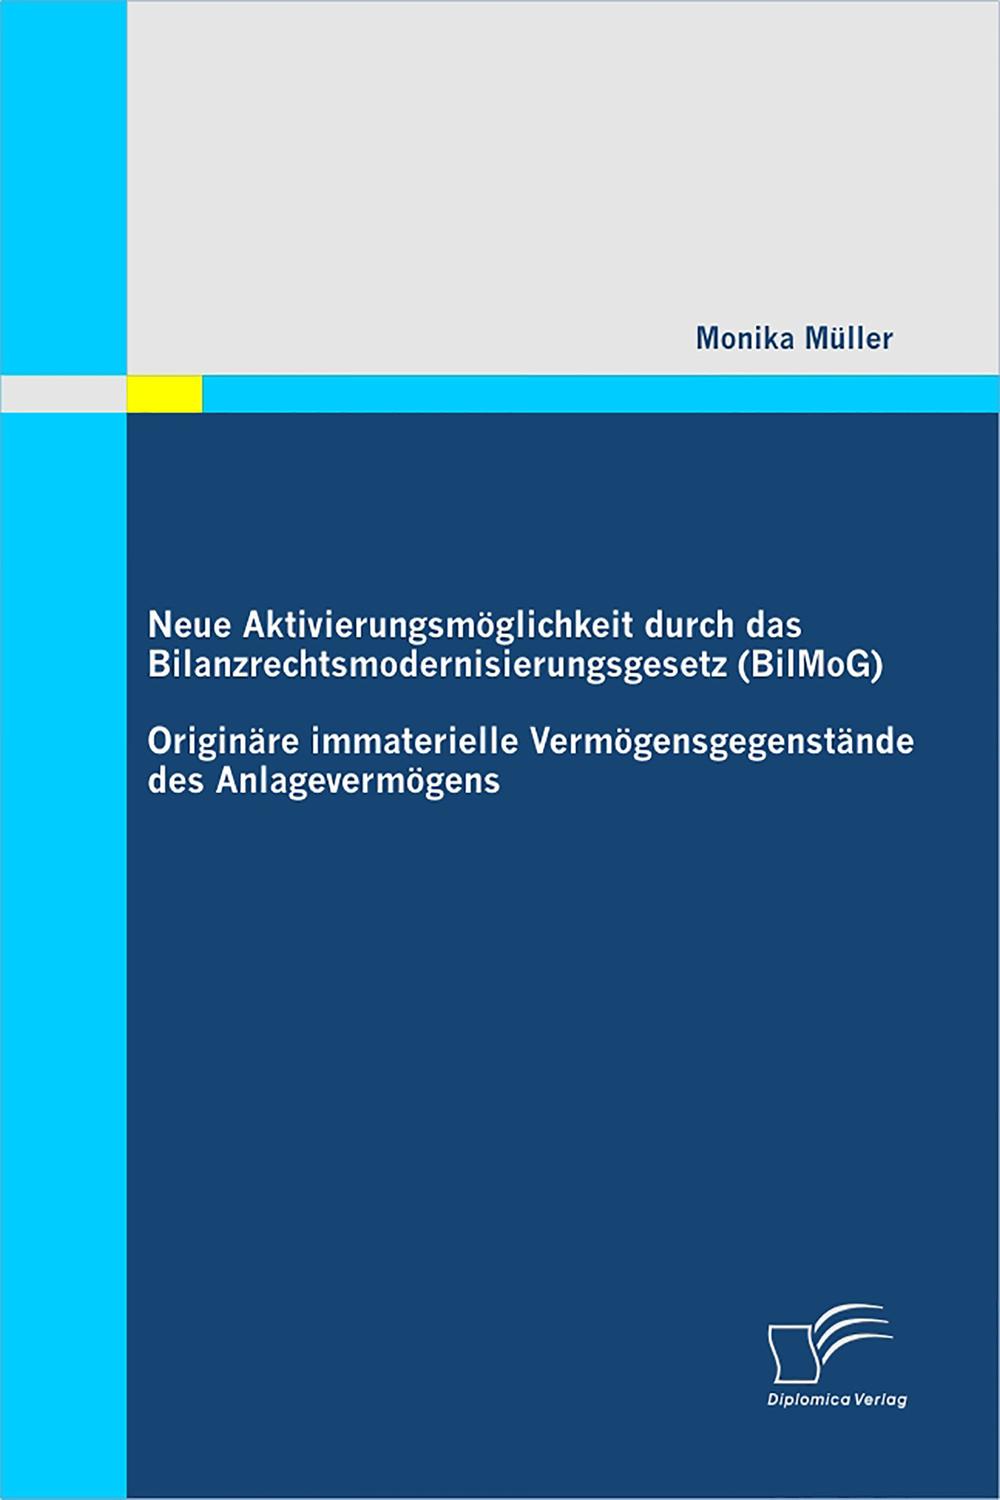 Neue Aktivierungsmöglichkeit durch das Bilanzrechtsmodernisierungsgesetz (BilMoG): Originäre immaterielle Vermögensgegenstände des Anlagevermögens - Monika Müller